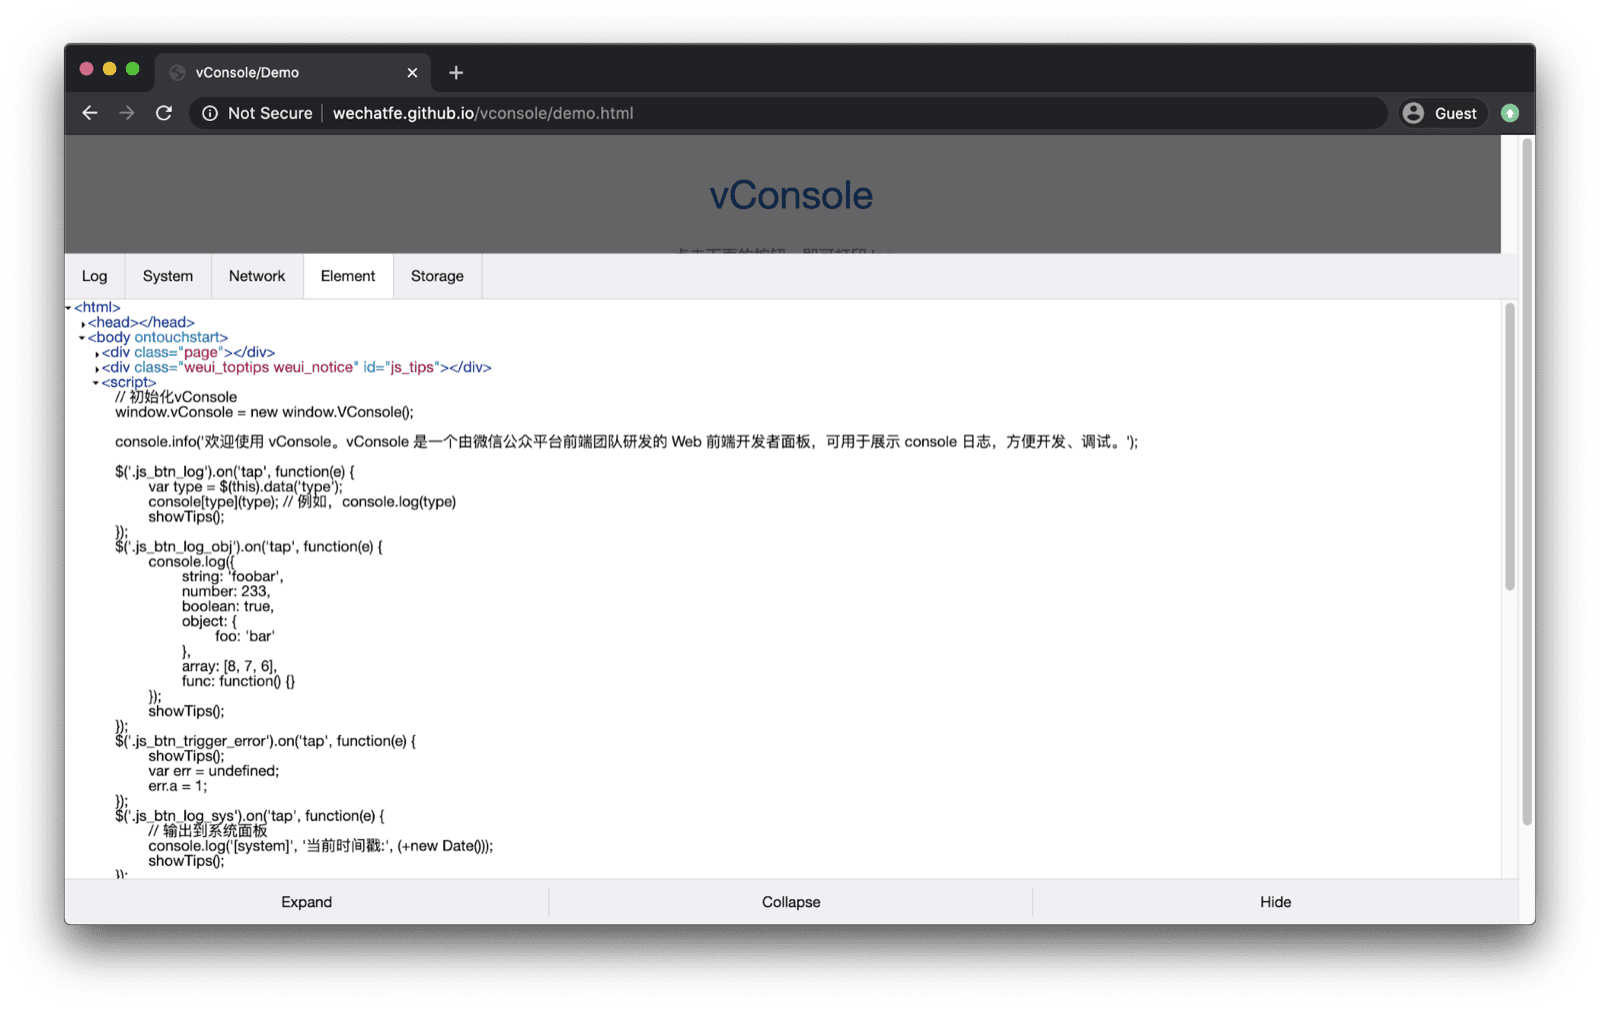 vConsole डेमो ऐप्लिकेशन. vConsole सबसे नीचे खुलता है, जिसमें लॉग, सिस्टम, नेटवर्क, एलिमेंट, और स्टोरेज के लिए टैब होते हैं.